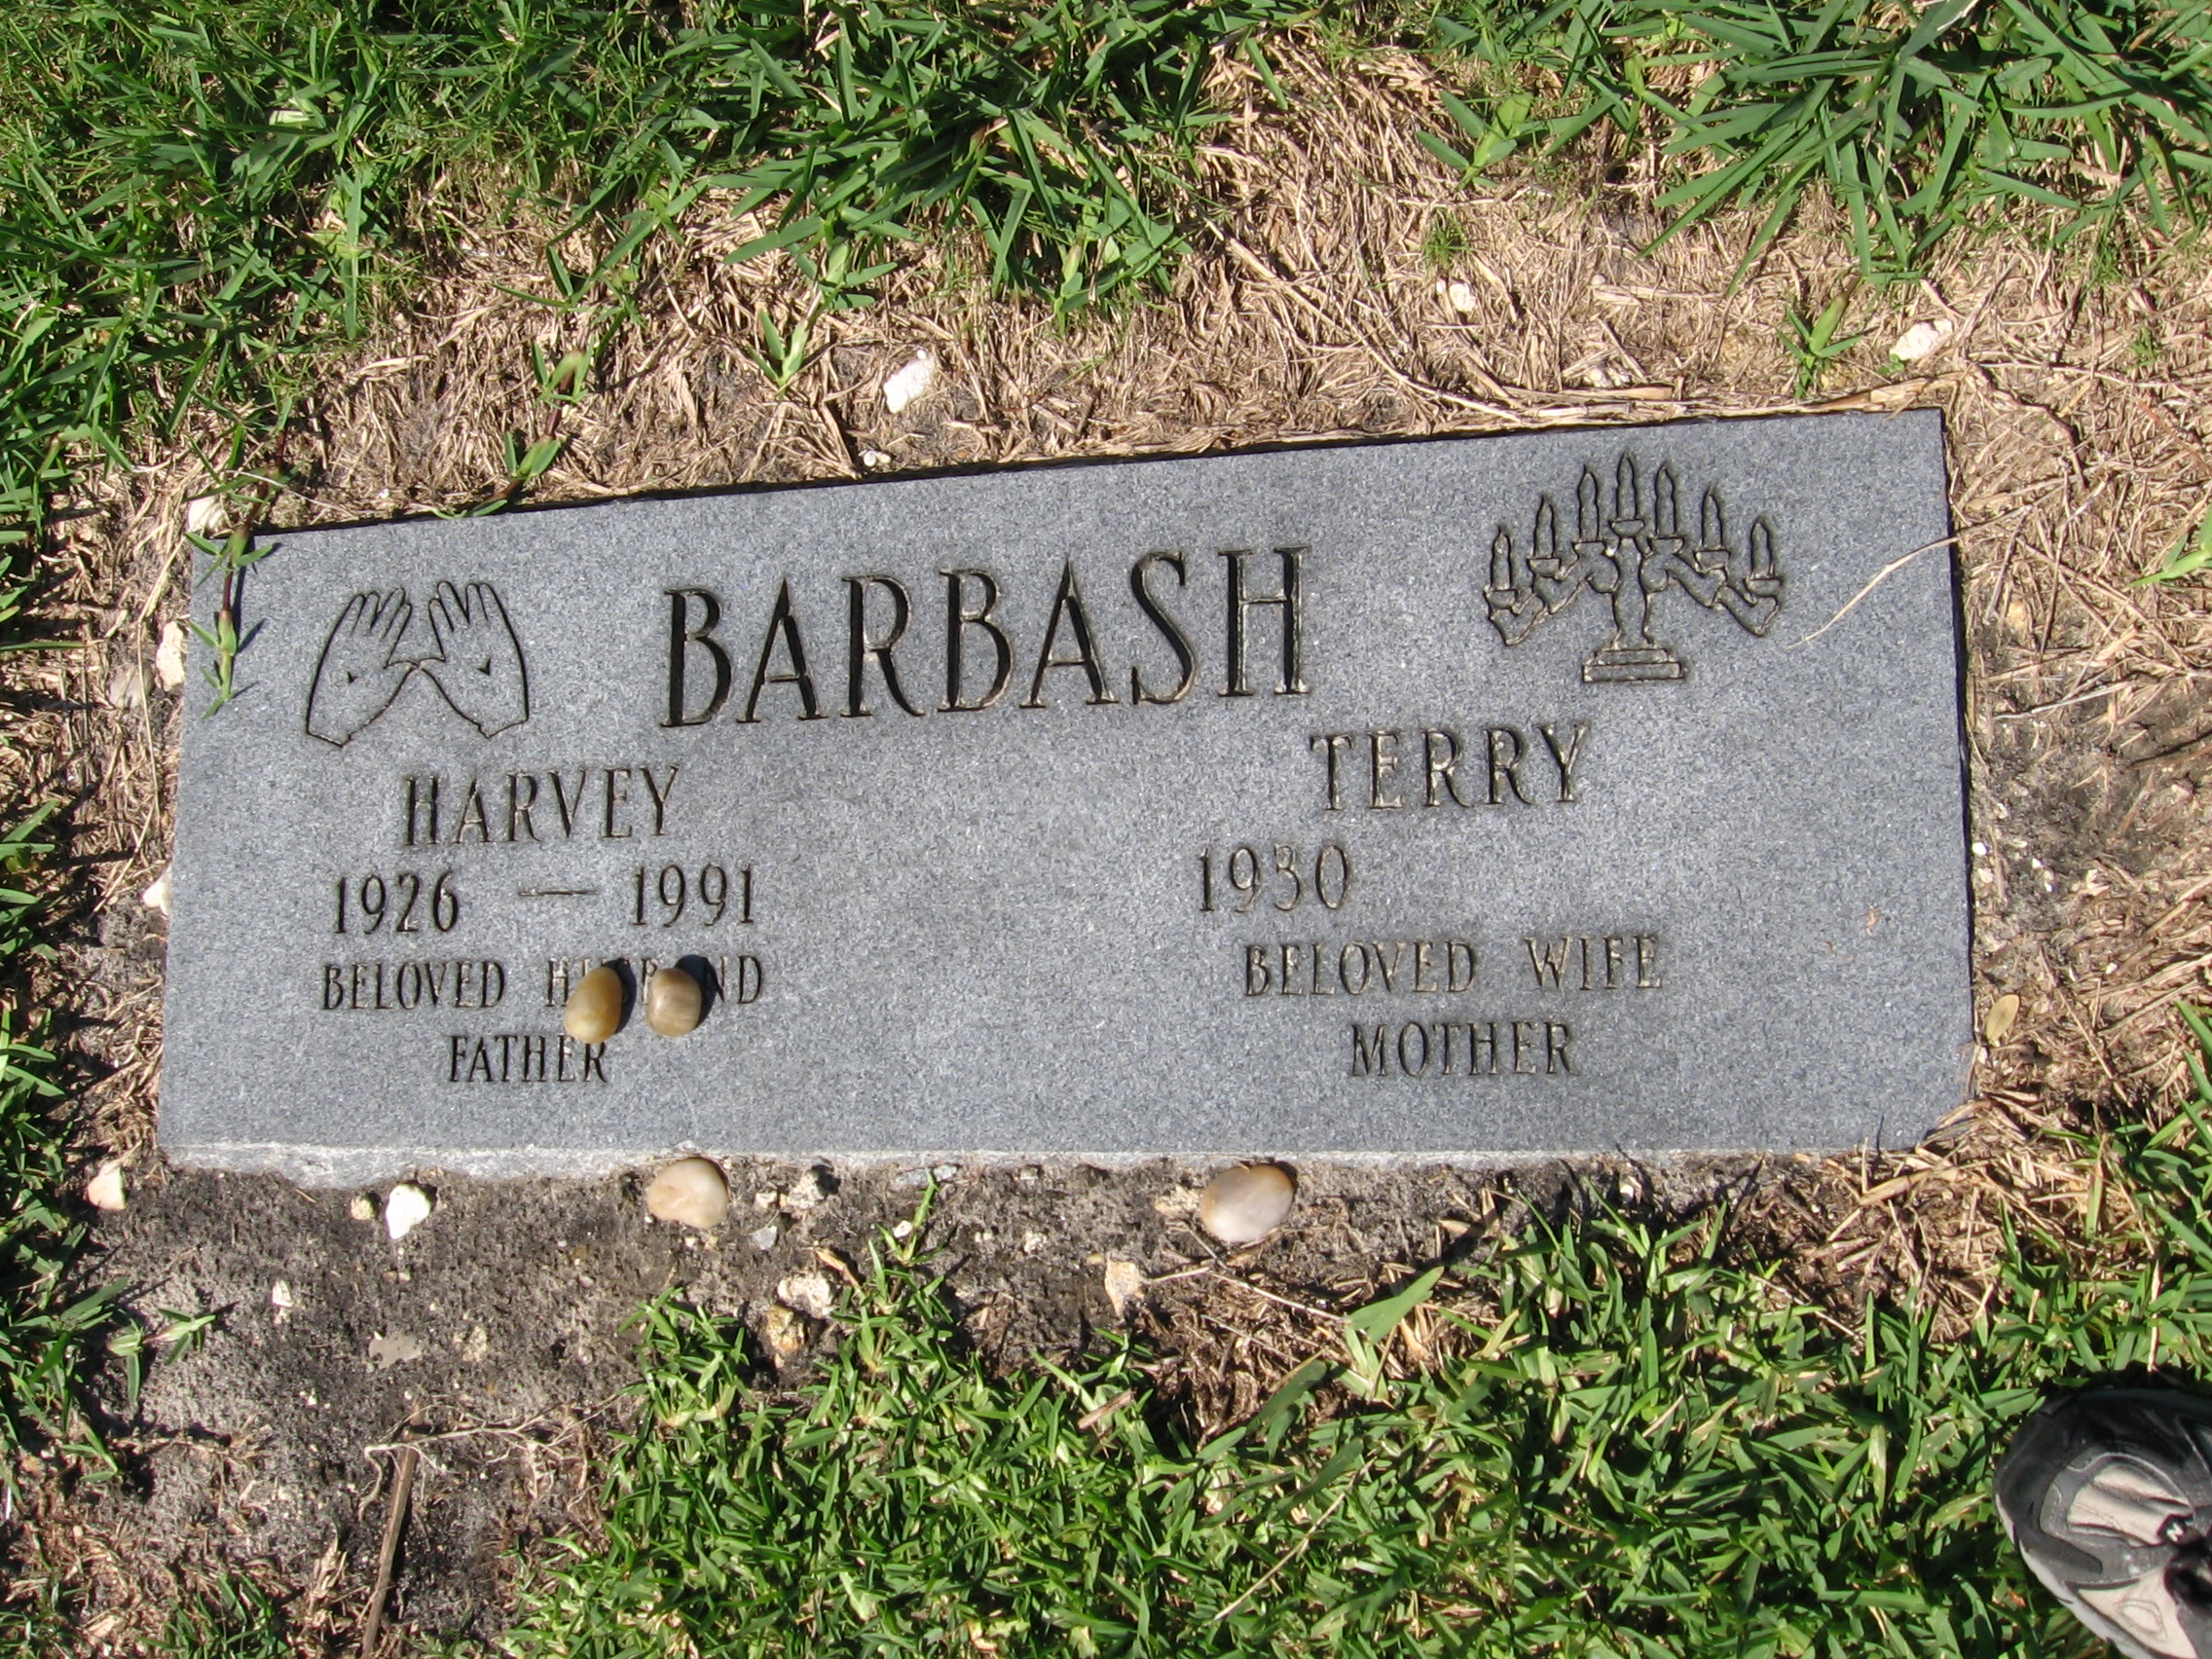 Harvey Barbash